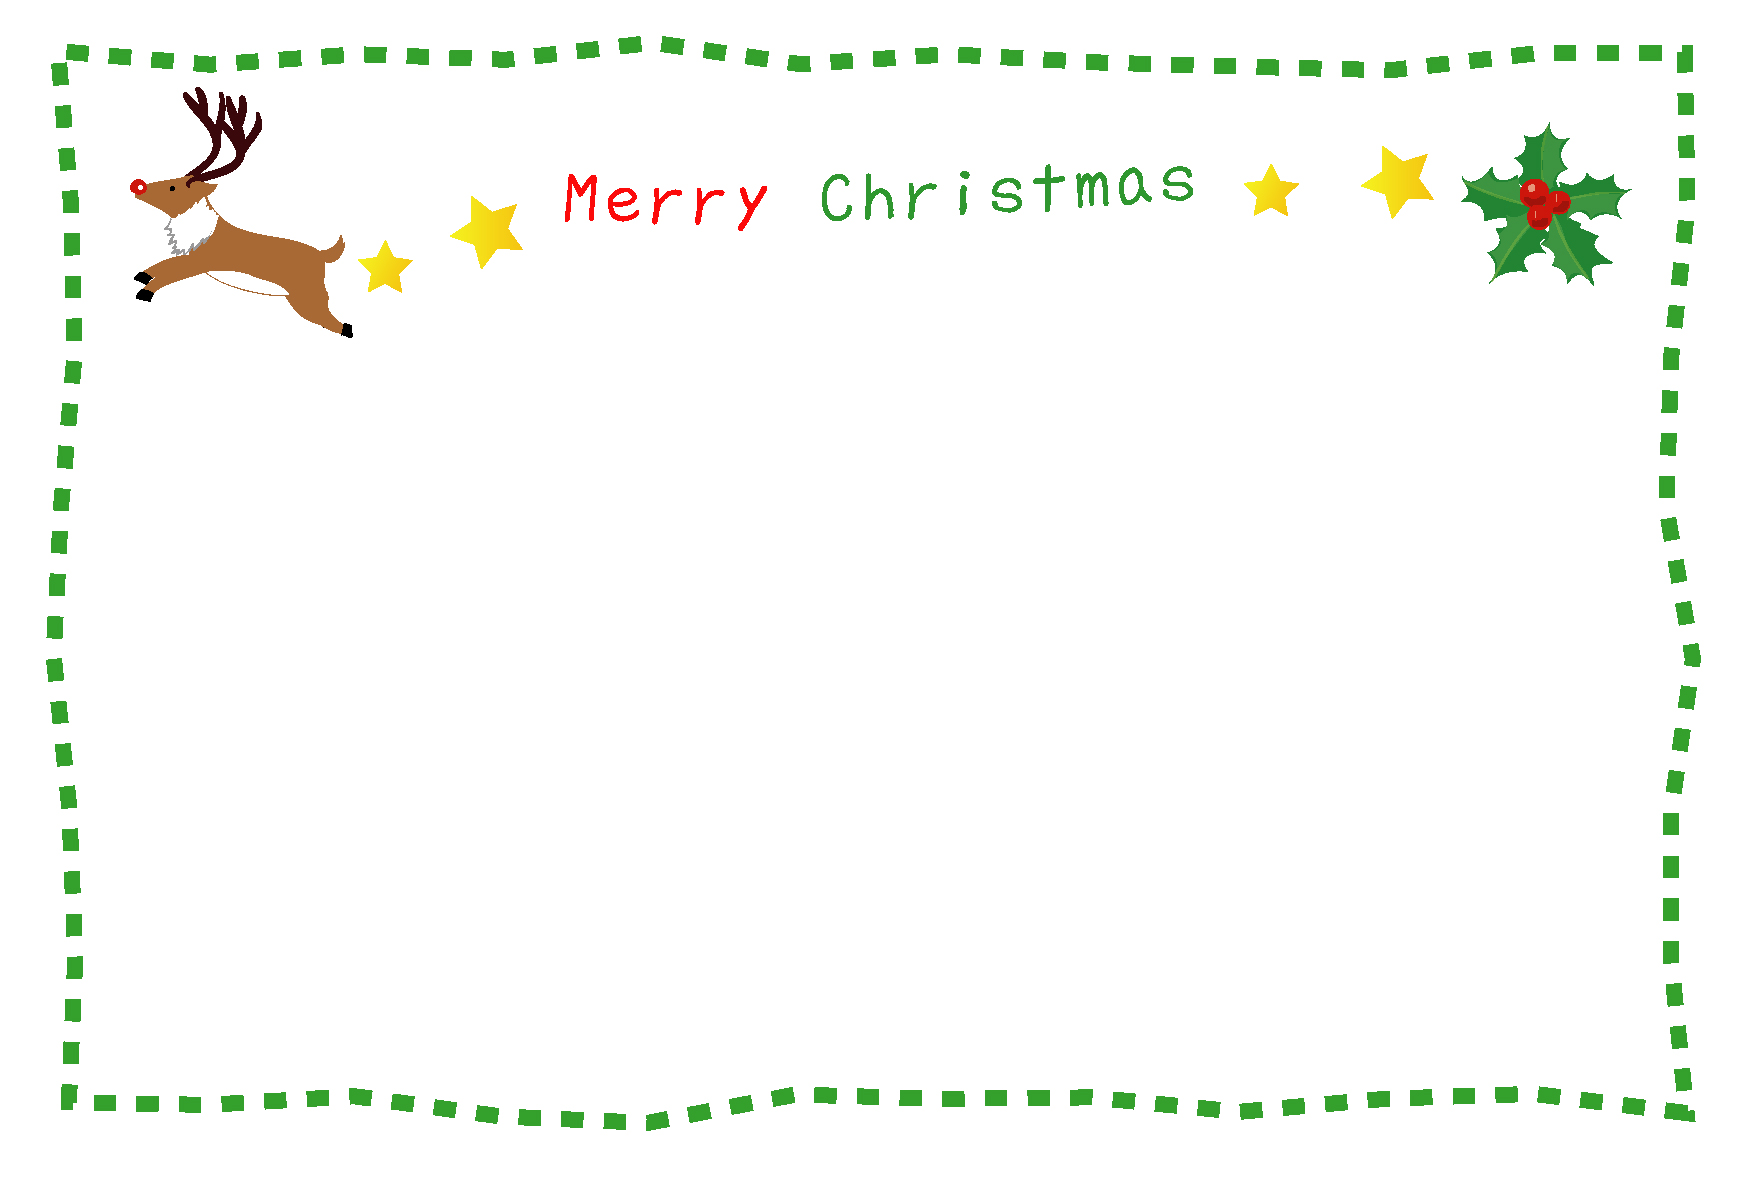 メッセージが書けるクリスマスカード素材 無料 テンプレート集 プレゼントに添えられる 冬 Naver まとめ